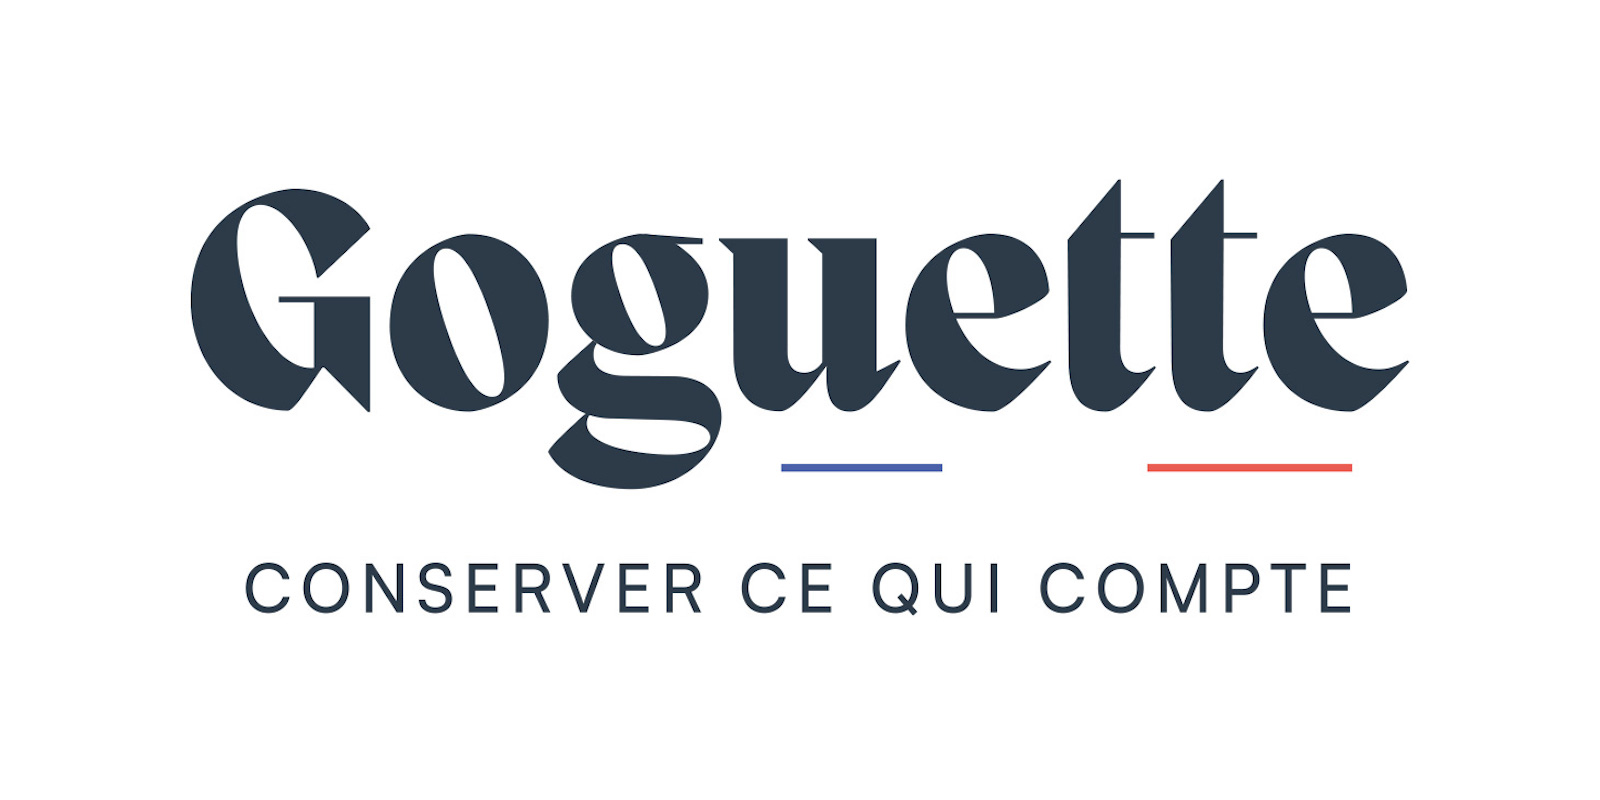 Avec Goguette, Eurocave veut séduire les trentenaires